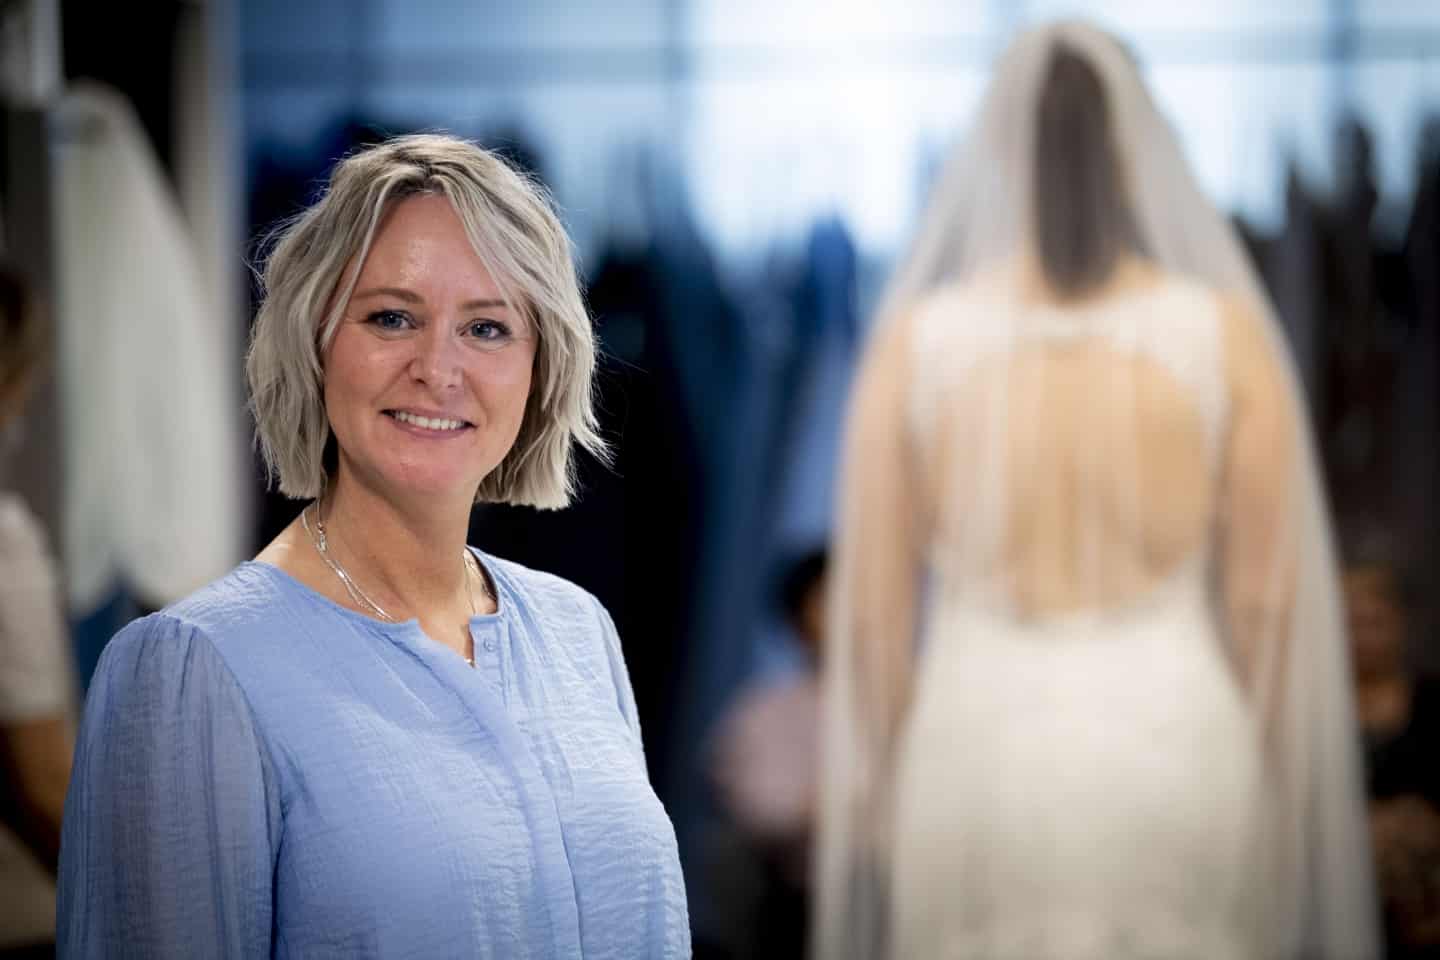 Tina flytter sin kjolebutik: Det bliver underligt at rykke det væk fra | dbrs.dk